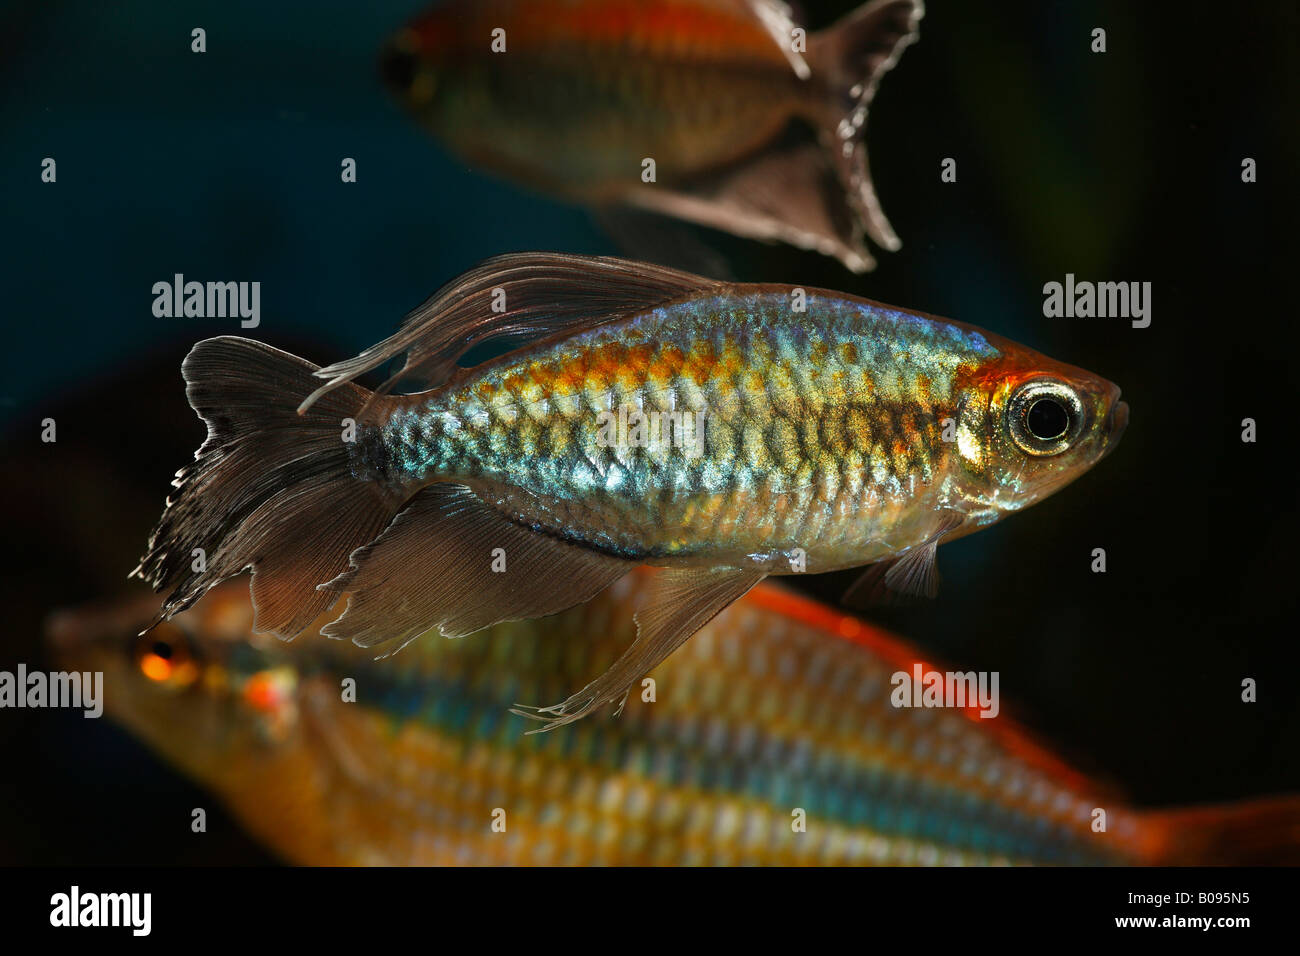 Congo Tetra pesci (Phenacogrammus interruptus), maschio, nativo di Africa, acqua calda, acquario d acqua dolce Foto Stock